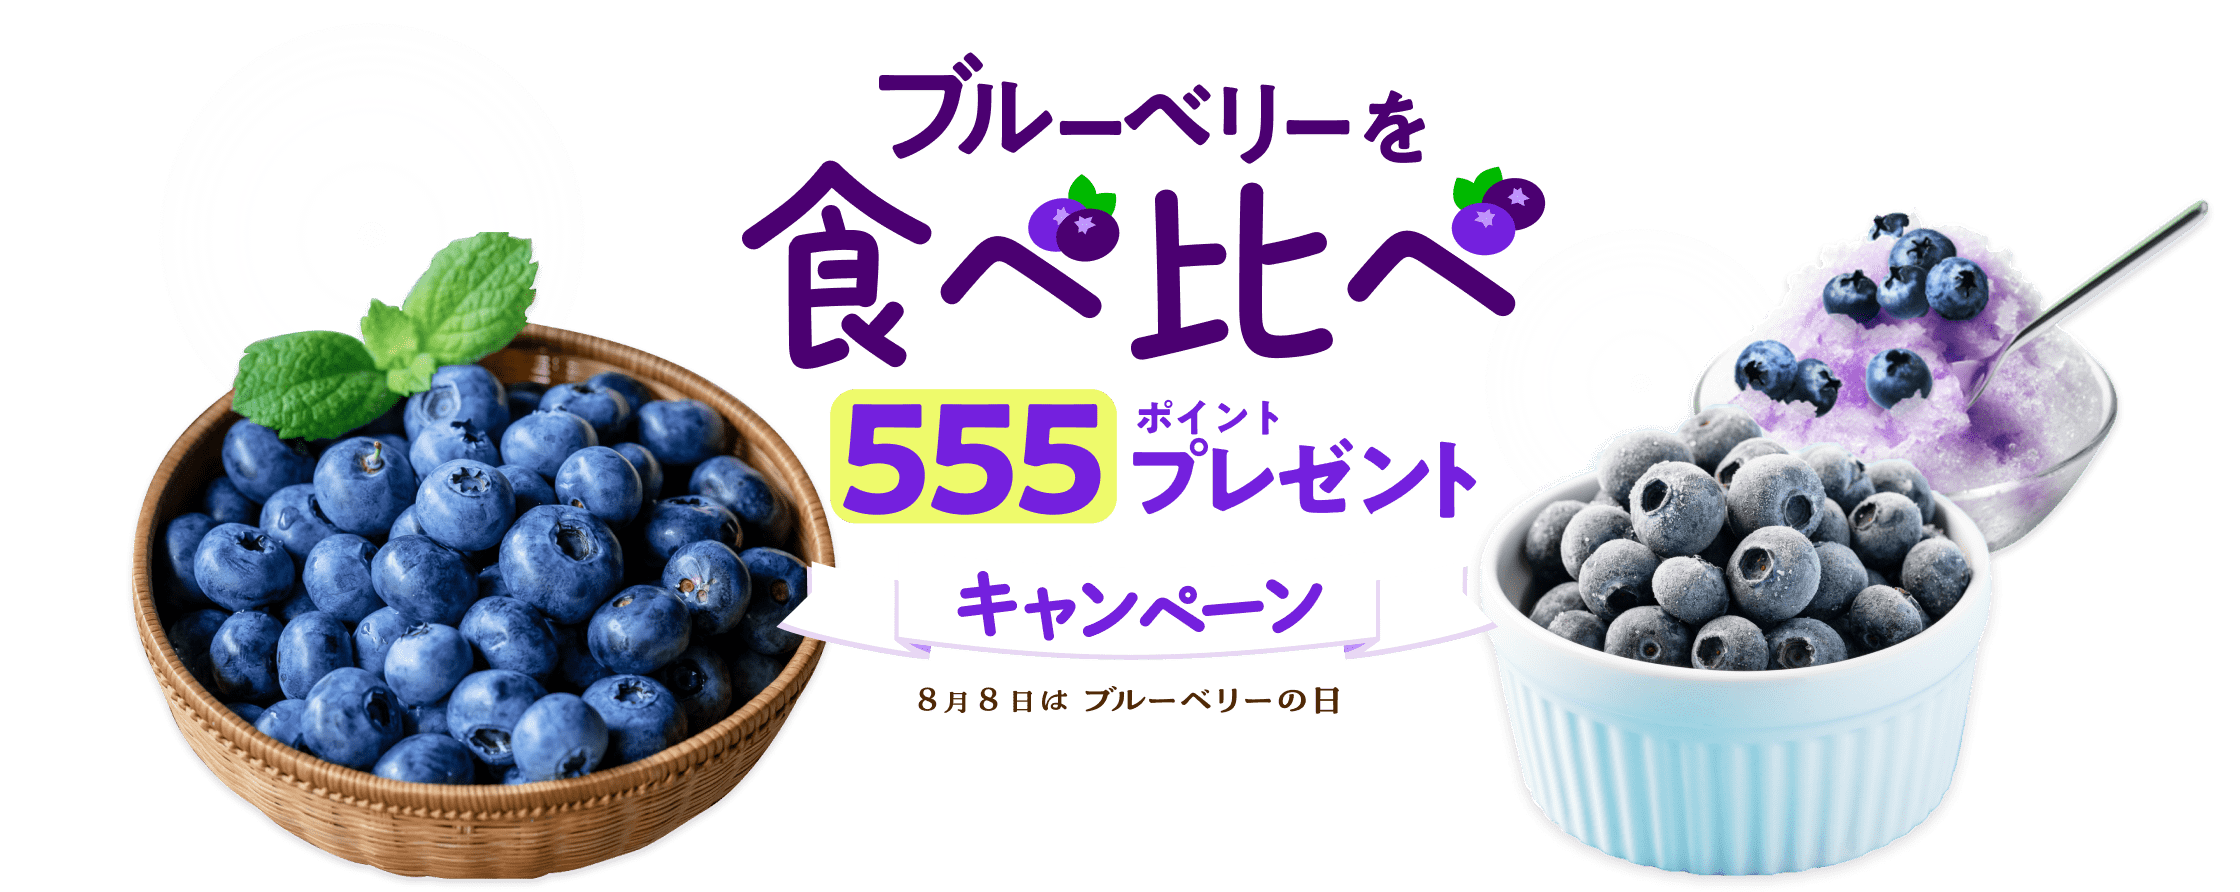 ブルーベリーを食べ比べ 555ポイントプレゼントキャンペーン 8月8日はブルーベリーの日